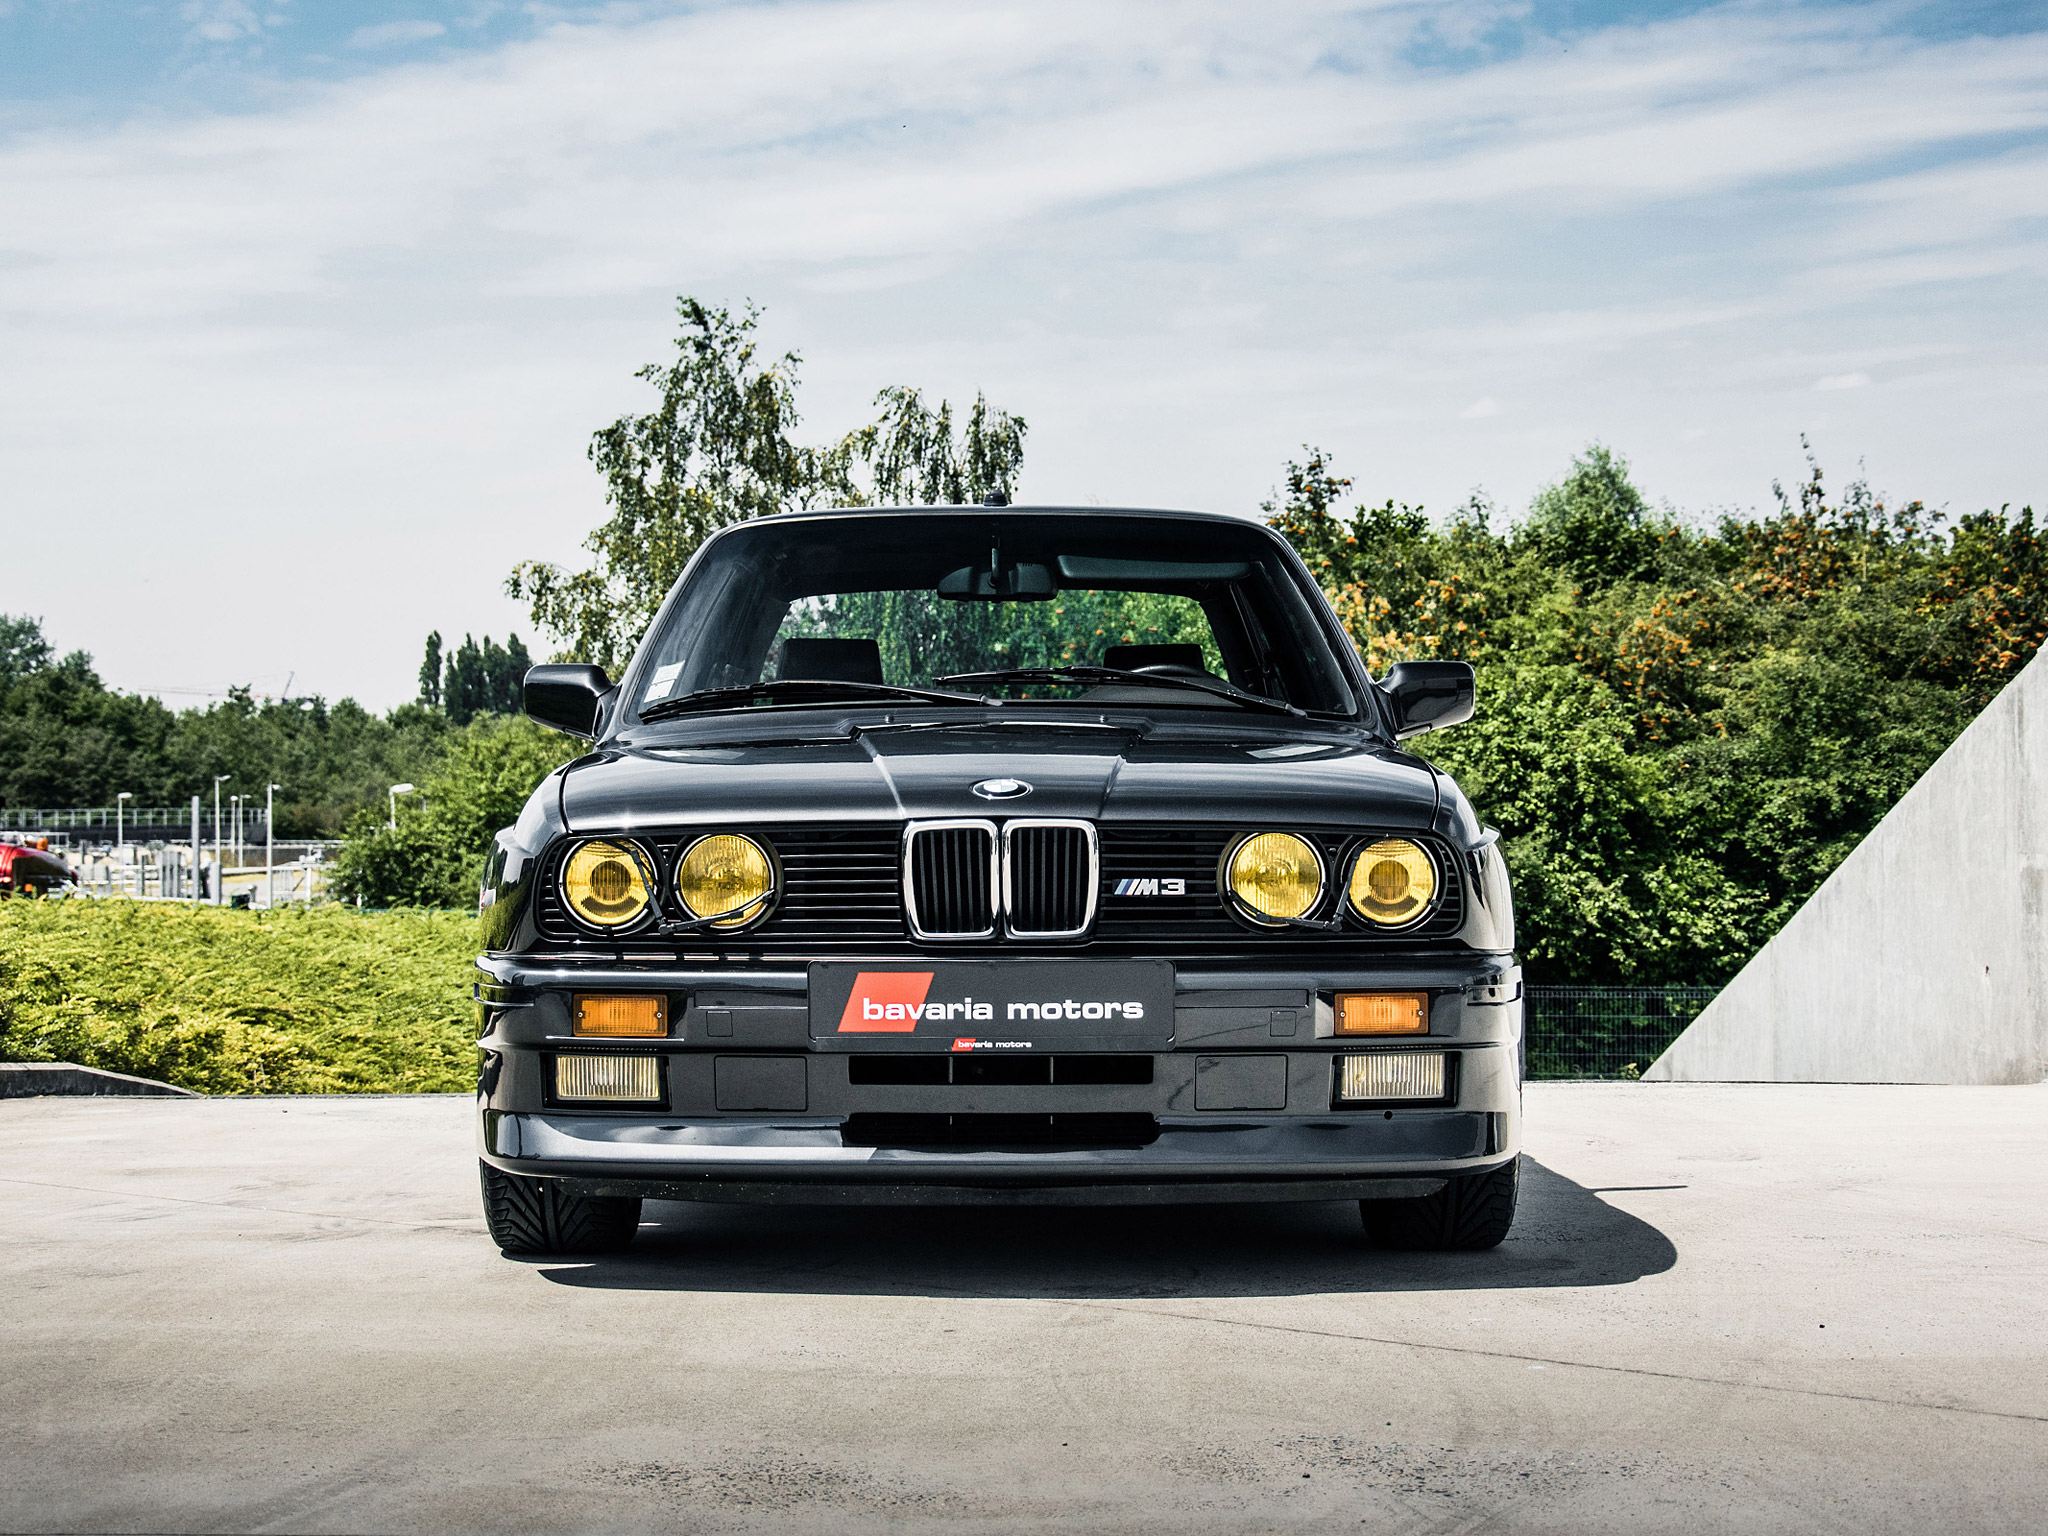  1987 BMW E30 M3 Wallpaper.